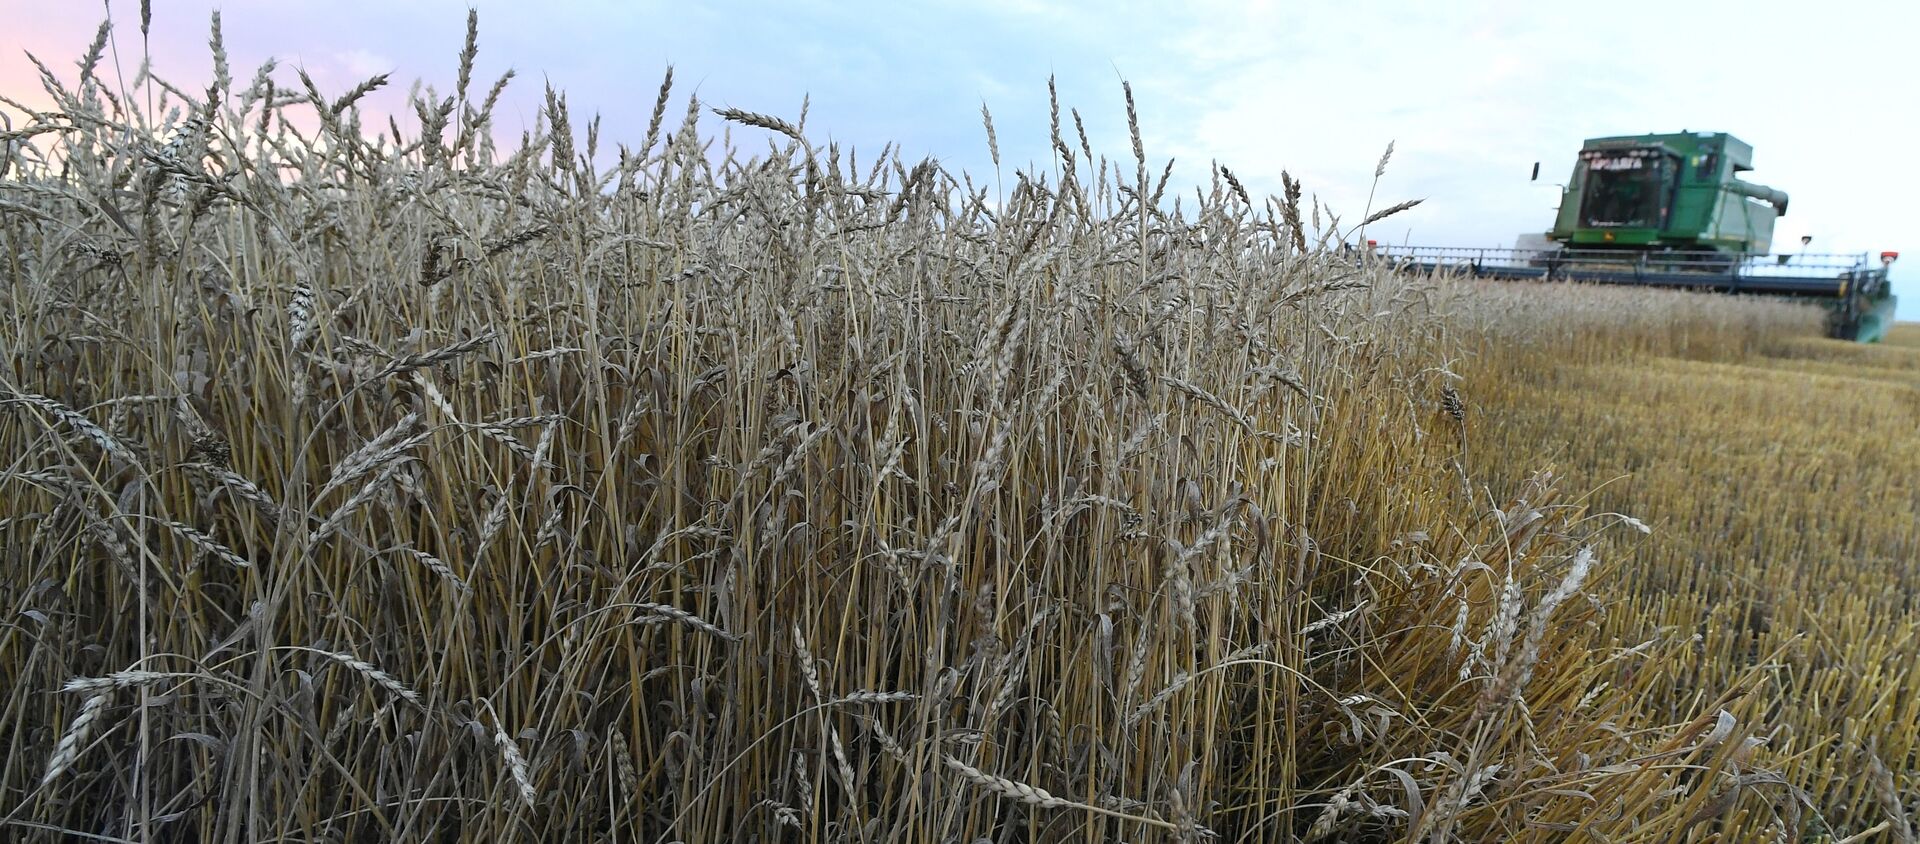 Уборка урожая пшеницы. Архивное фото - Sputnik Кыргызстан, 1920, 29.10.2021